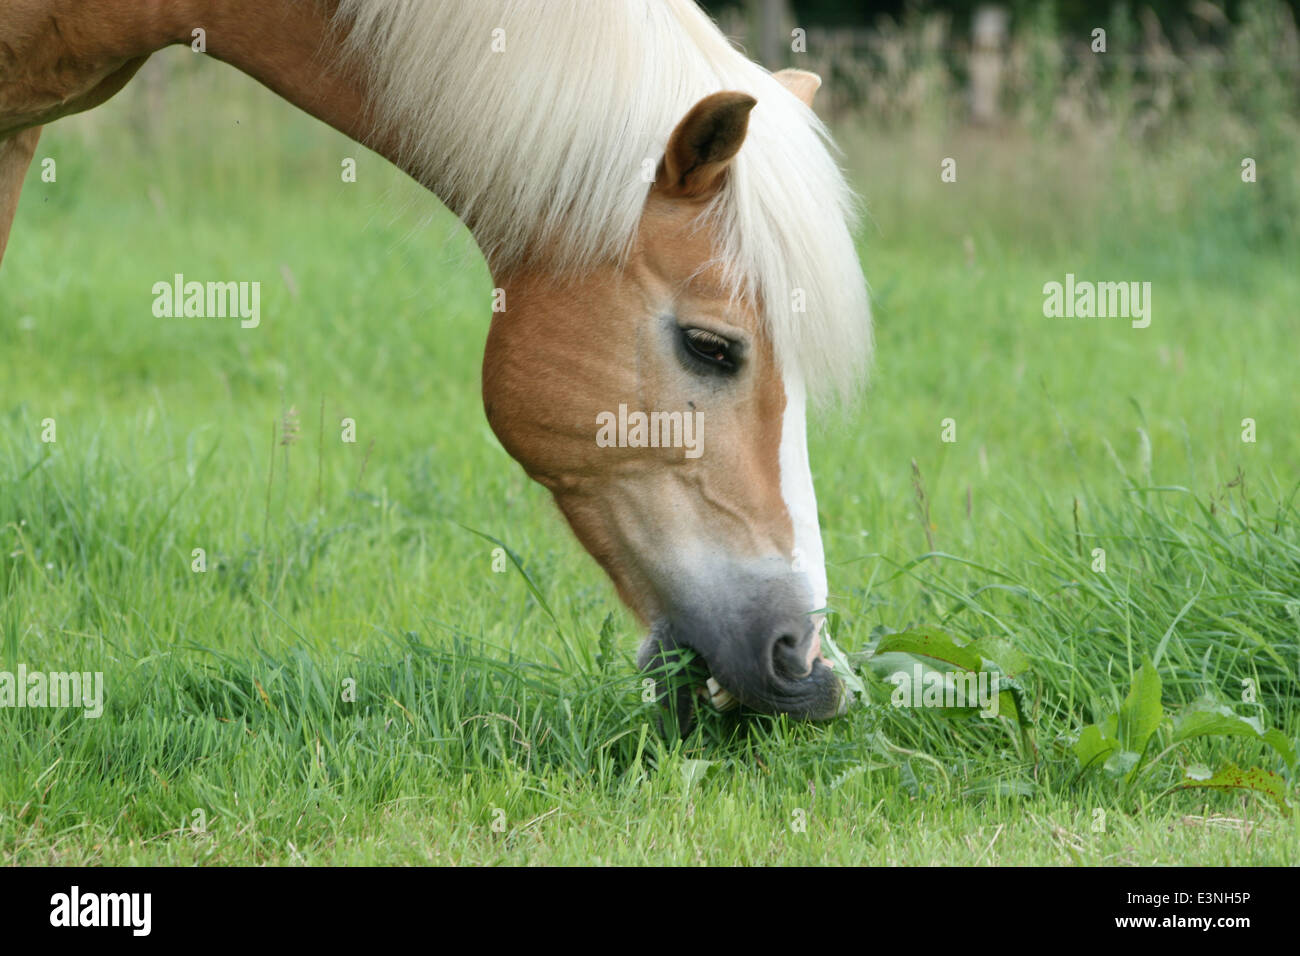 Pferd beim fressen Foto Stock